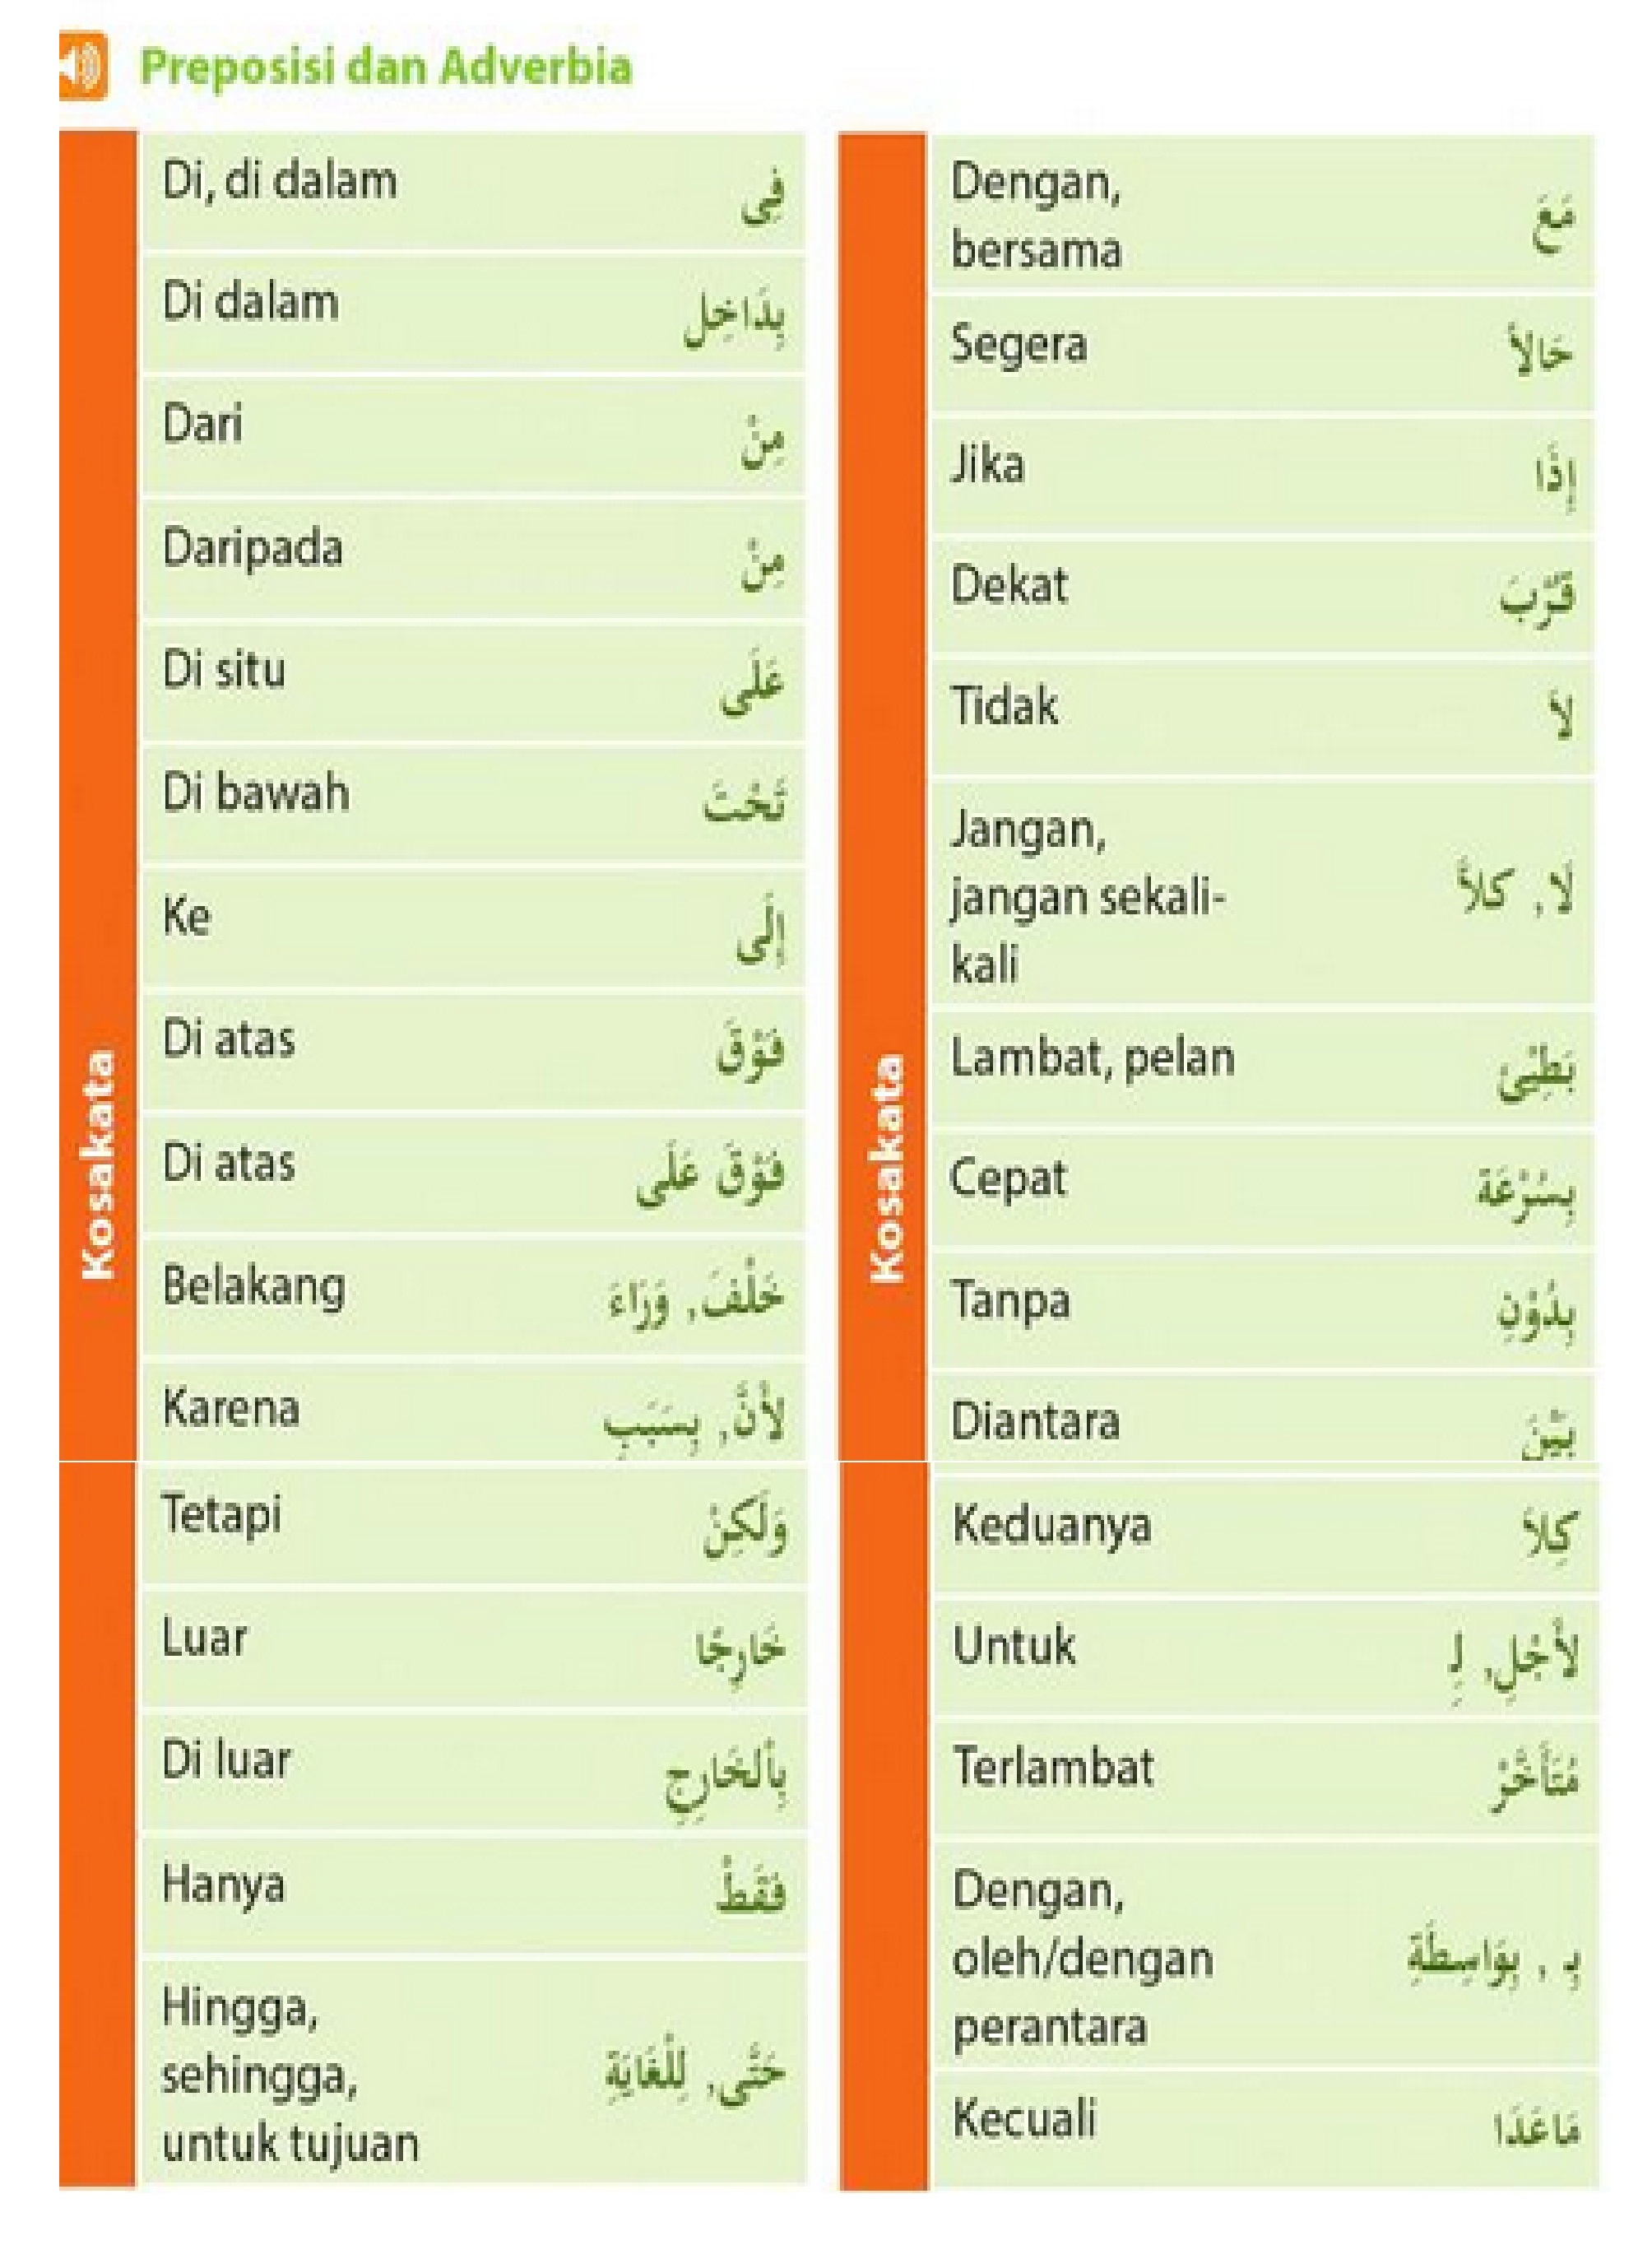 Contoh preposisi dan adverbia dalam  hiwar bahasa  arab  